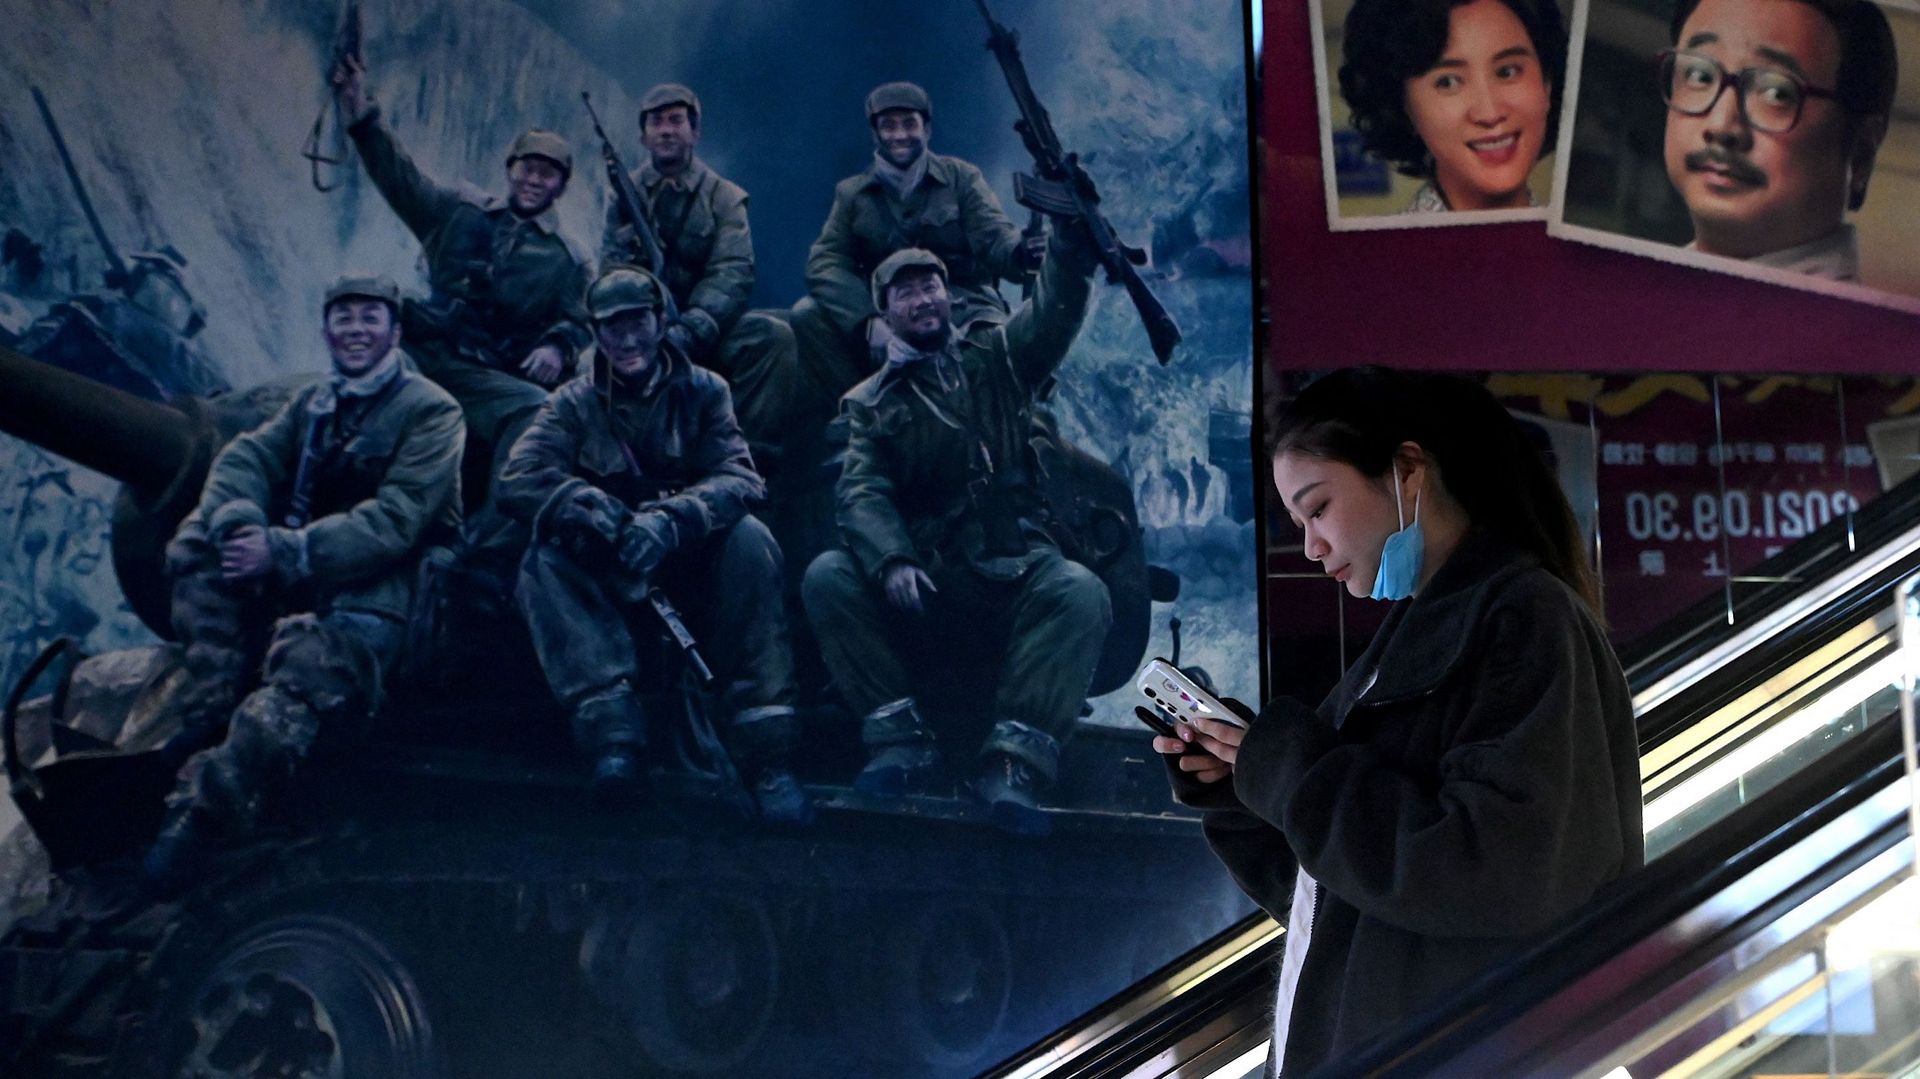 un-film-patriotique-chinois-sur-la-guerre-de-coree-du-nord-bat-les-records